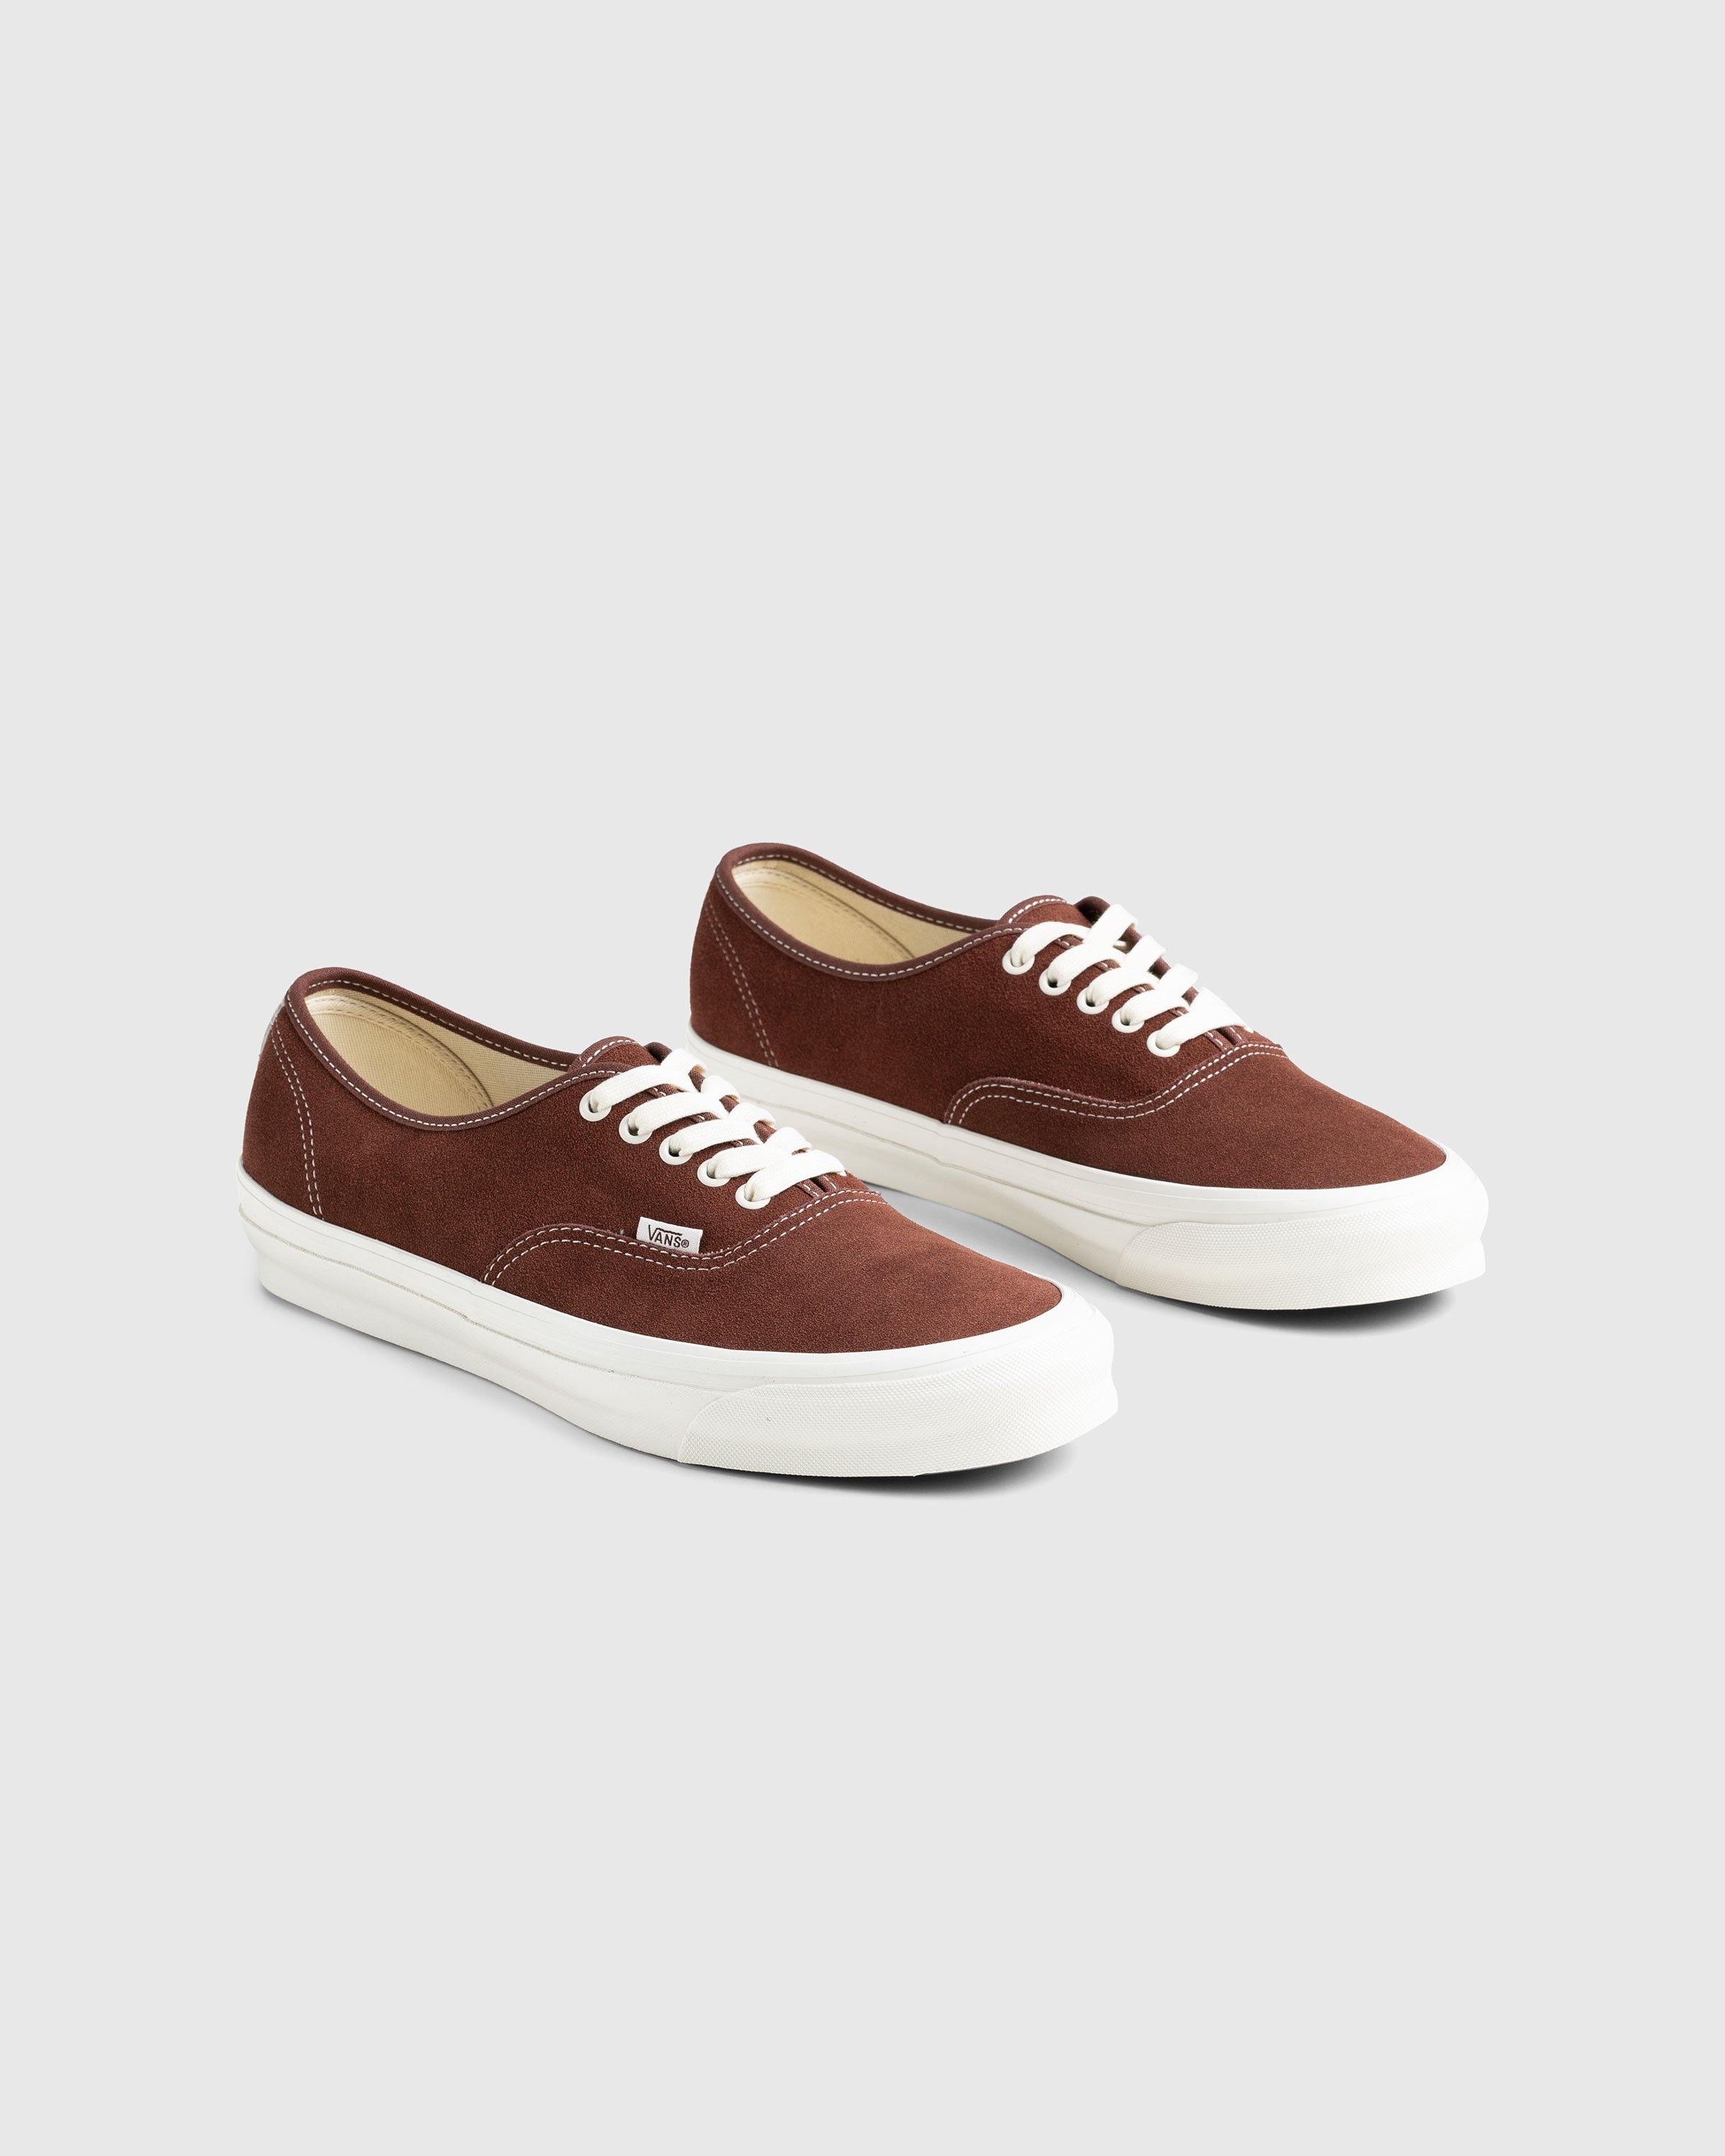 Vans – UA OG Authentic LX Suede Brown - Low Top Sneakers - Brown - Image 3